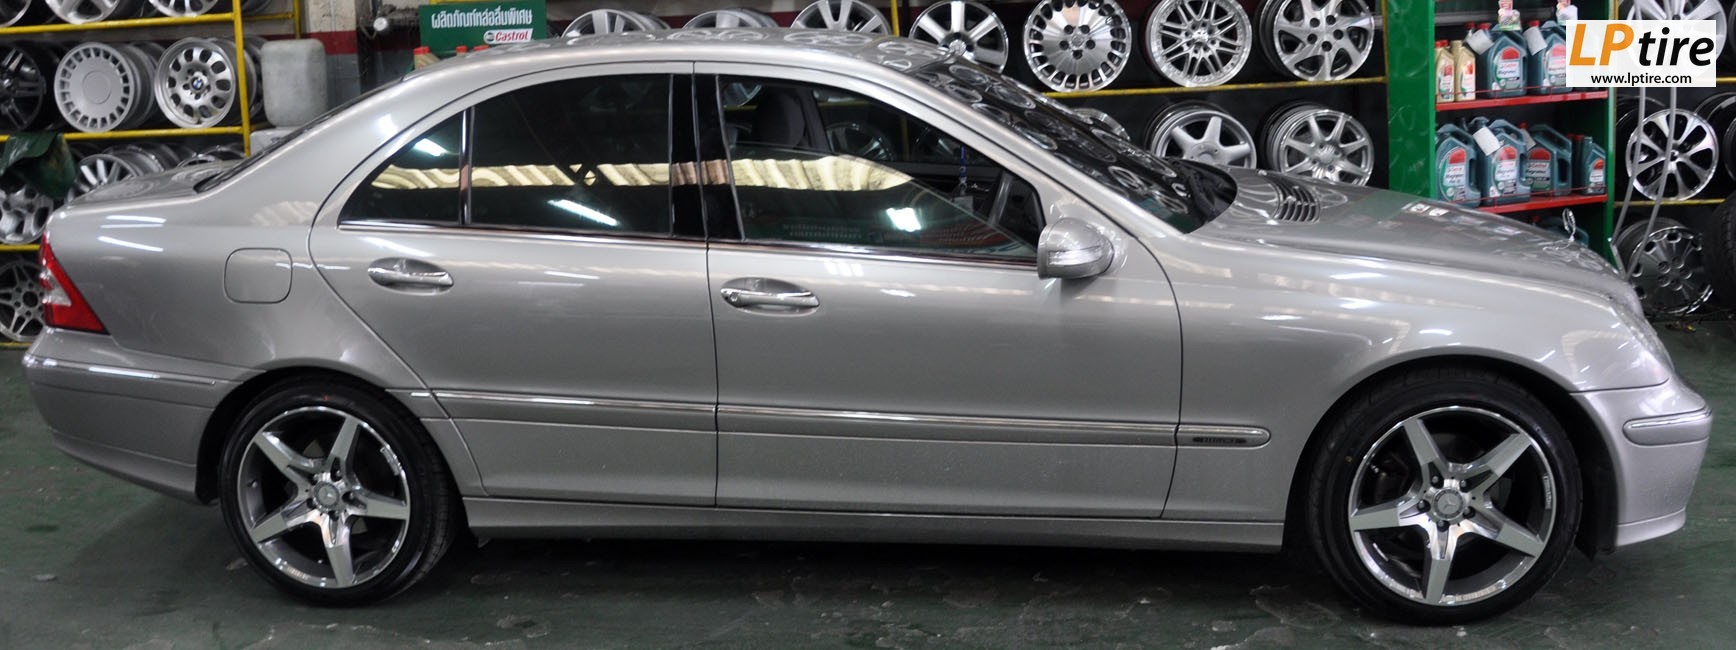 Benz C-Class W203 C220 + ล้อแม็กลาย AMG Edition 4 17นิ้ว สีเทาหน้าเงา + ยาง DUNLOP LM703 215/45-17